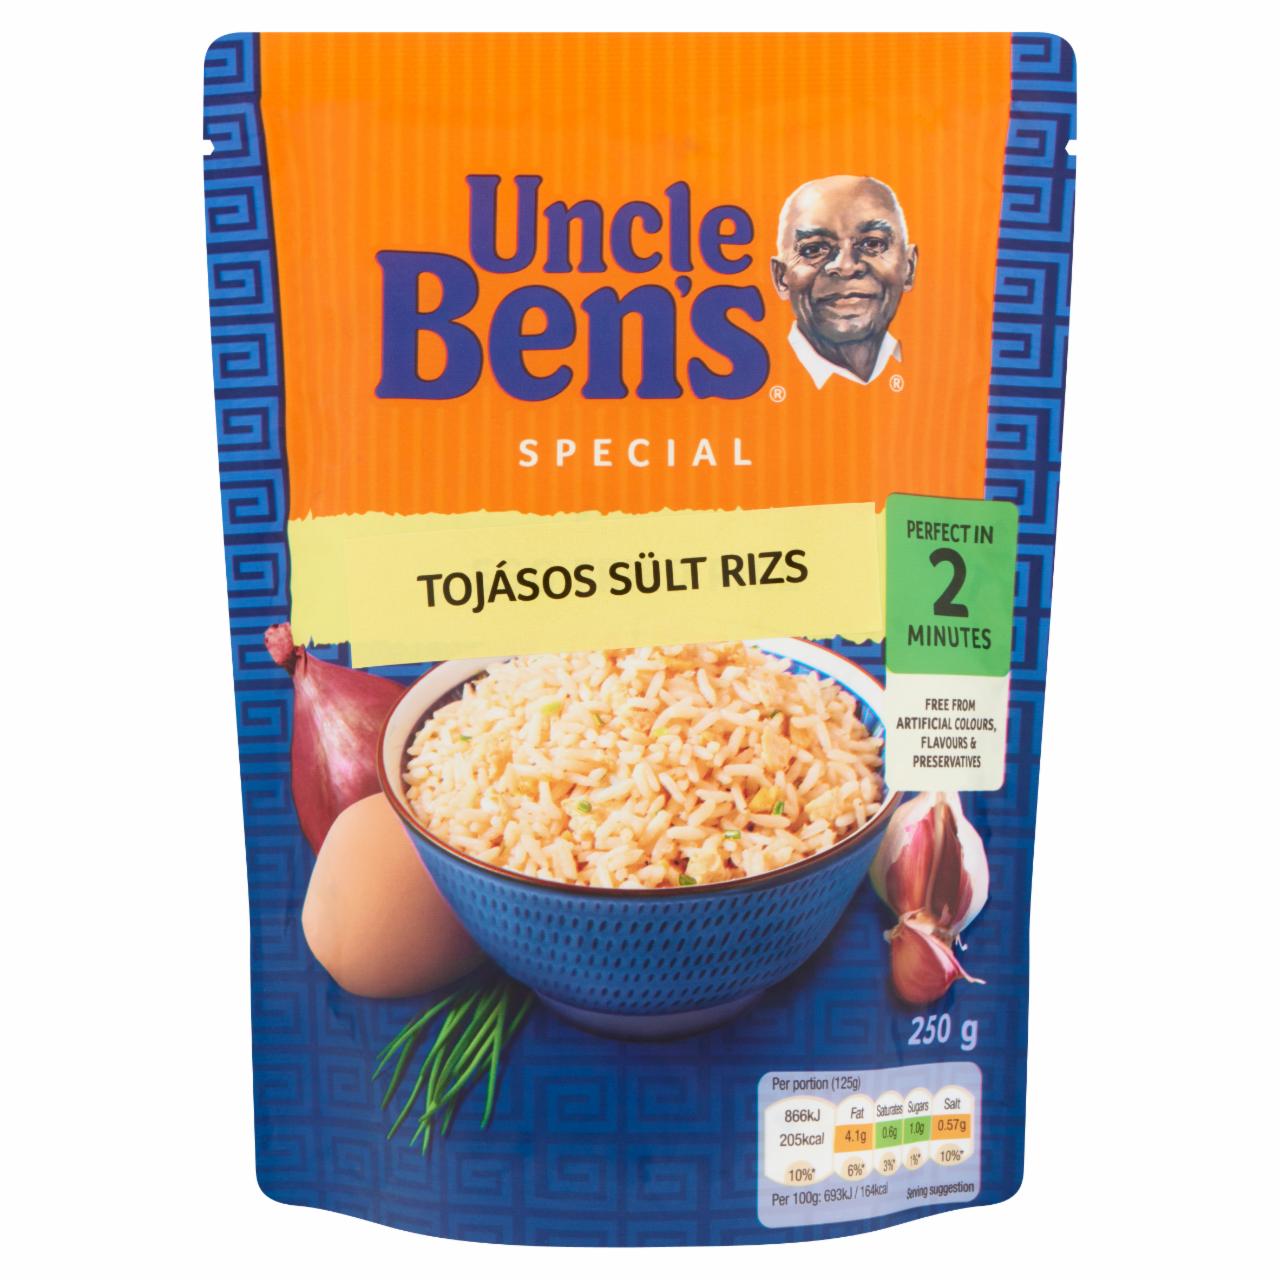 Képek - Tojásos sült rizs Uncle Ben's